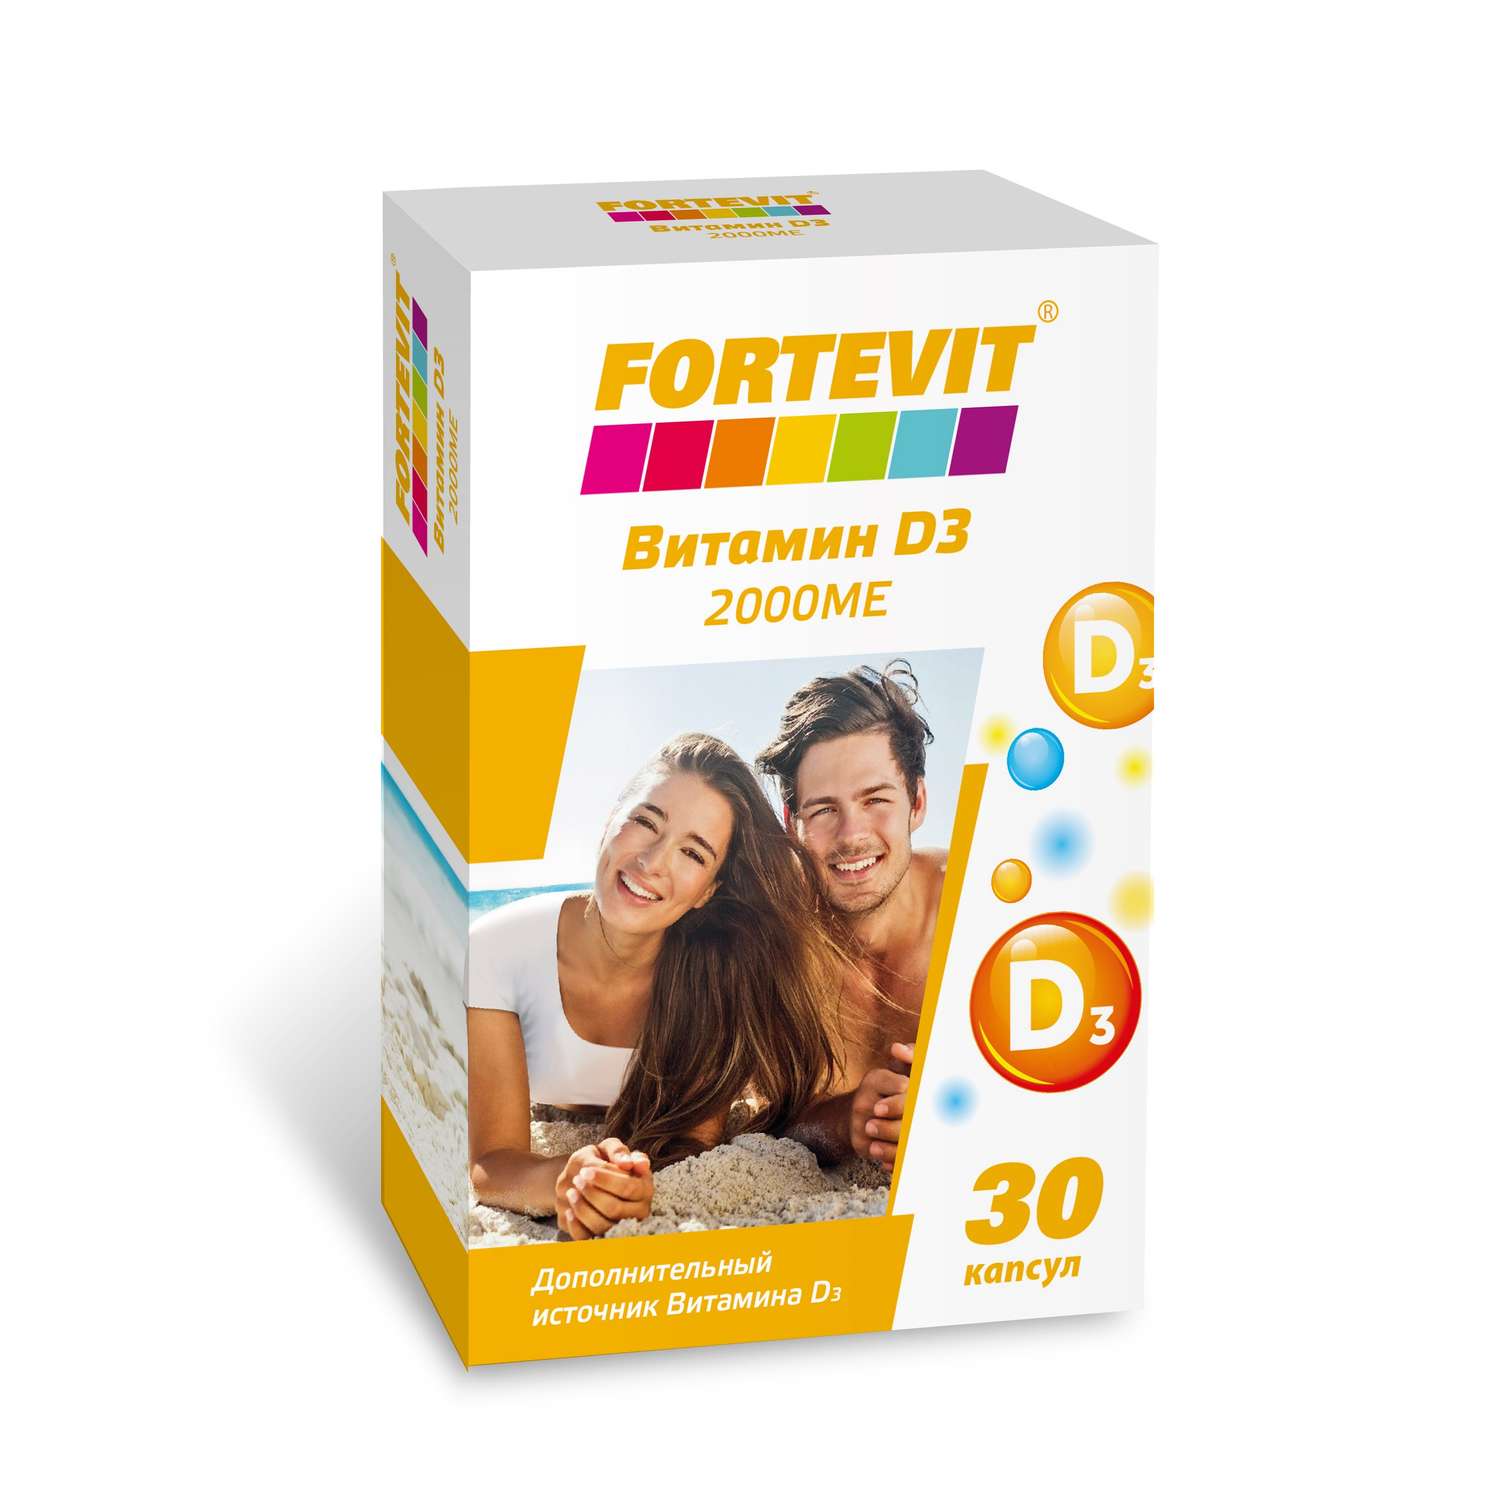 Биологически активная добавка Fortevit Витамин Д3 2000ме 30таблеток - фото 1